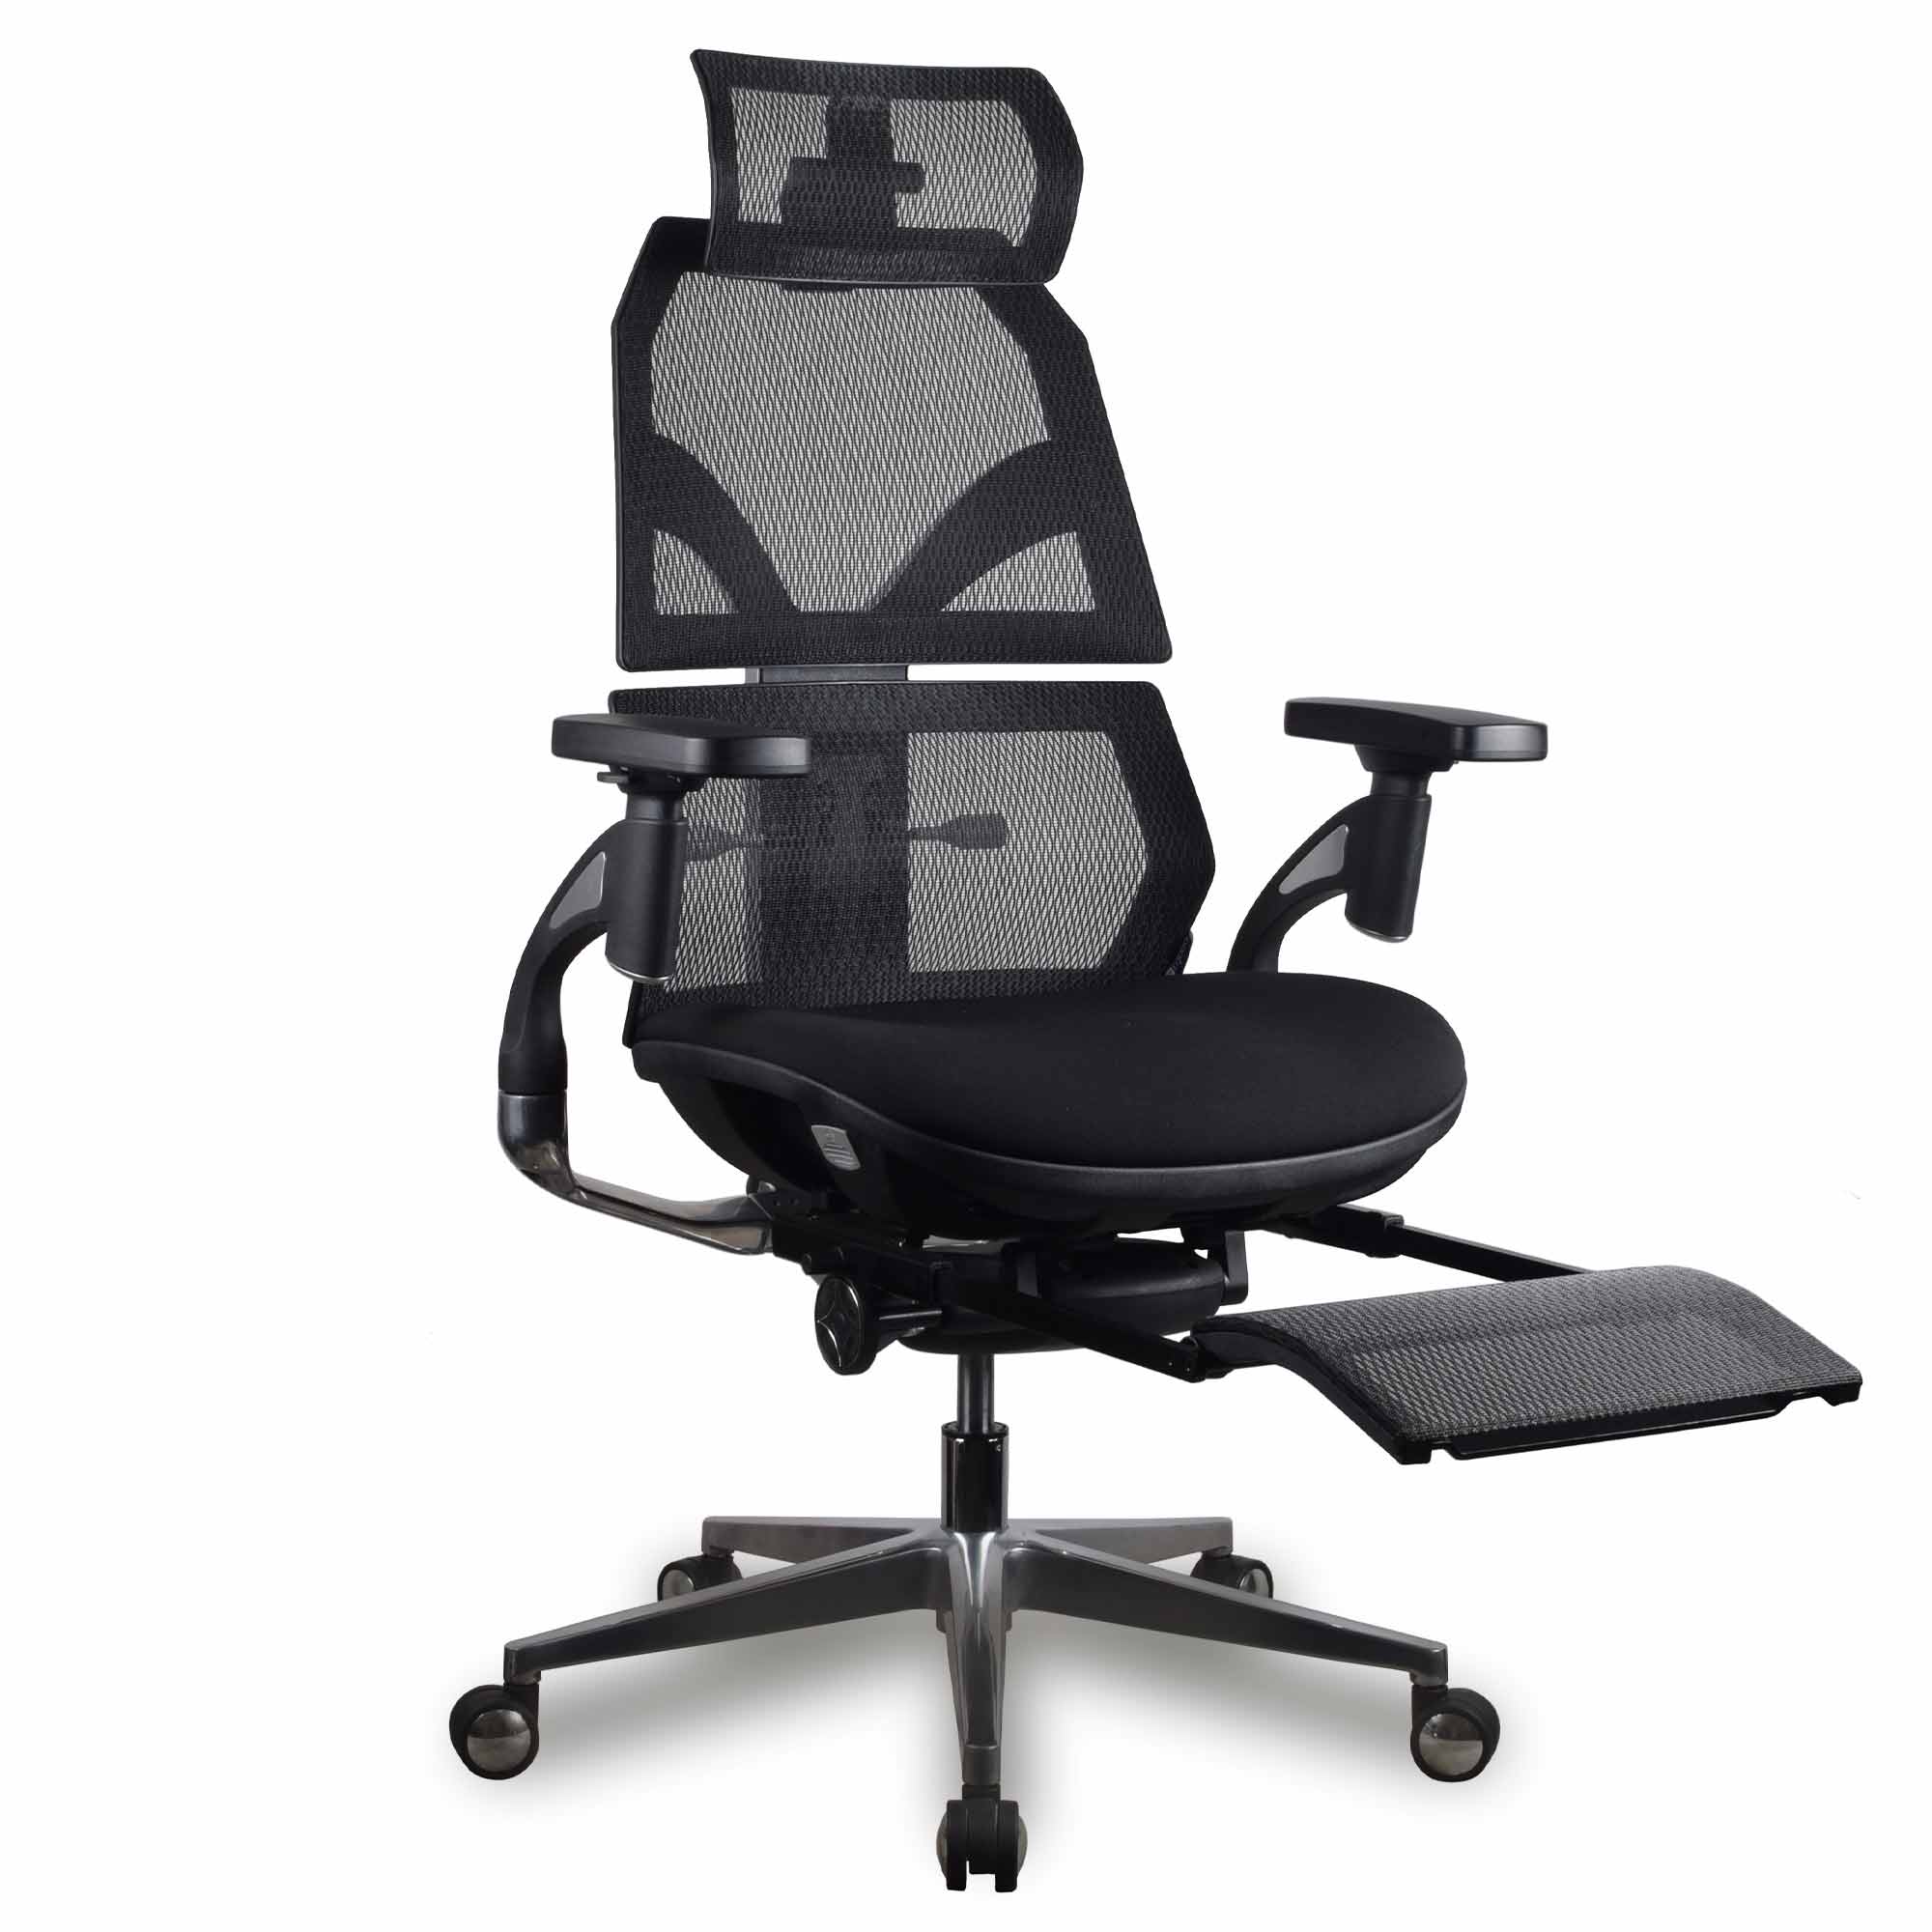 chaise ergonomique gamer AURA KQUEO mousse et maille noire